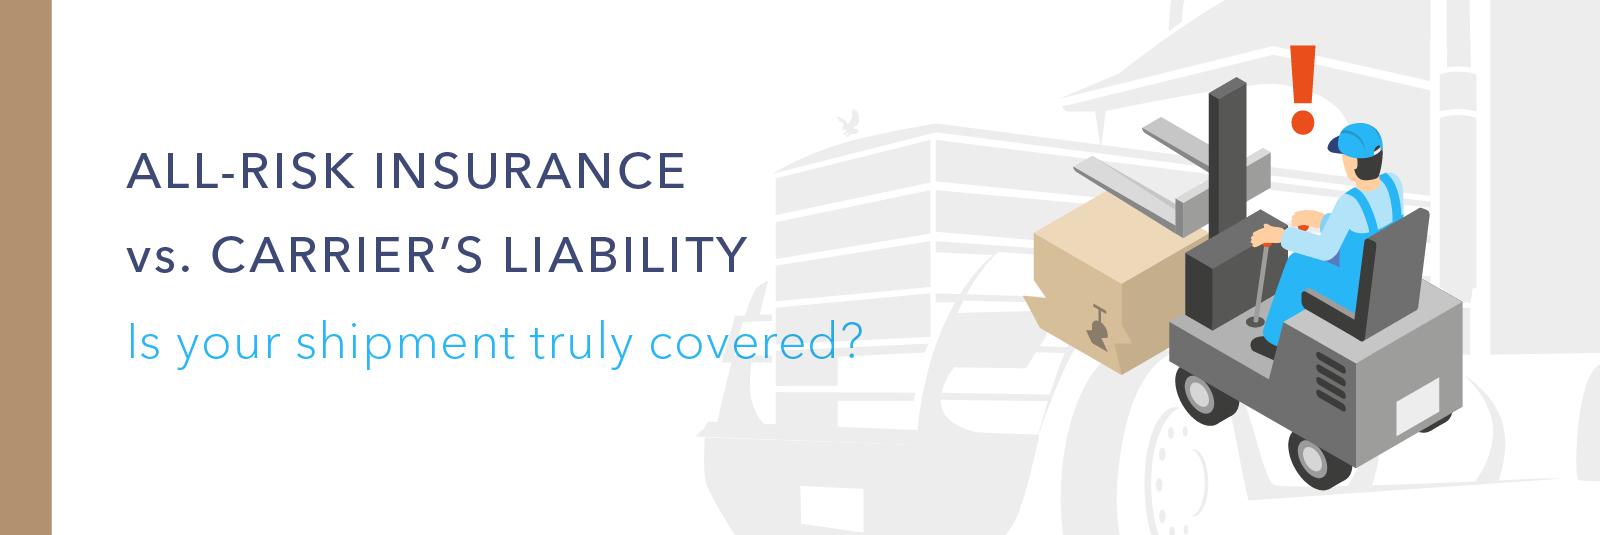 Banner highlighting All-Risk Insurance vs Carrier Liability